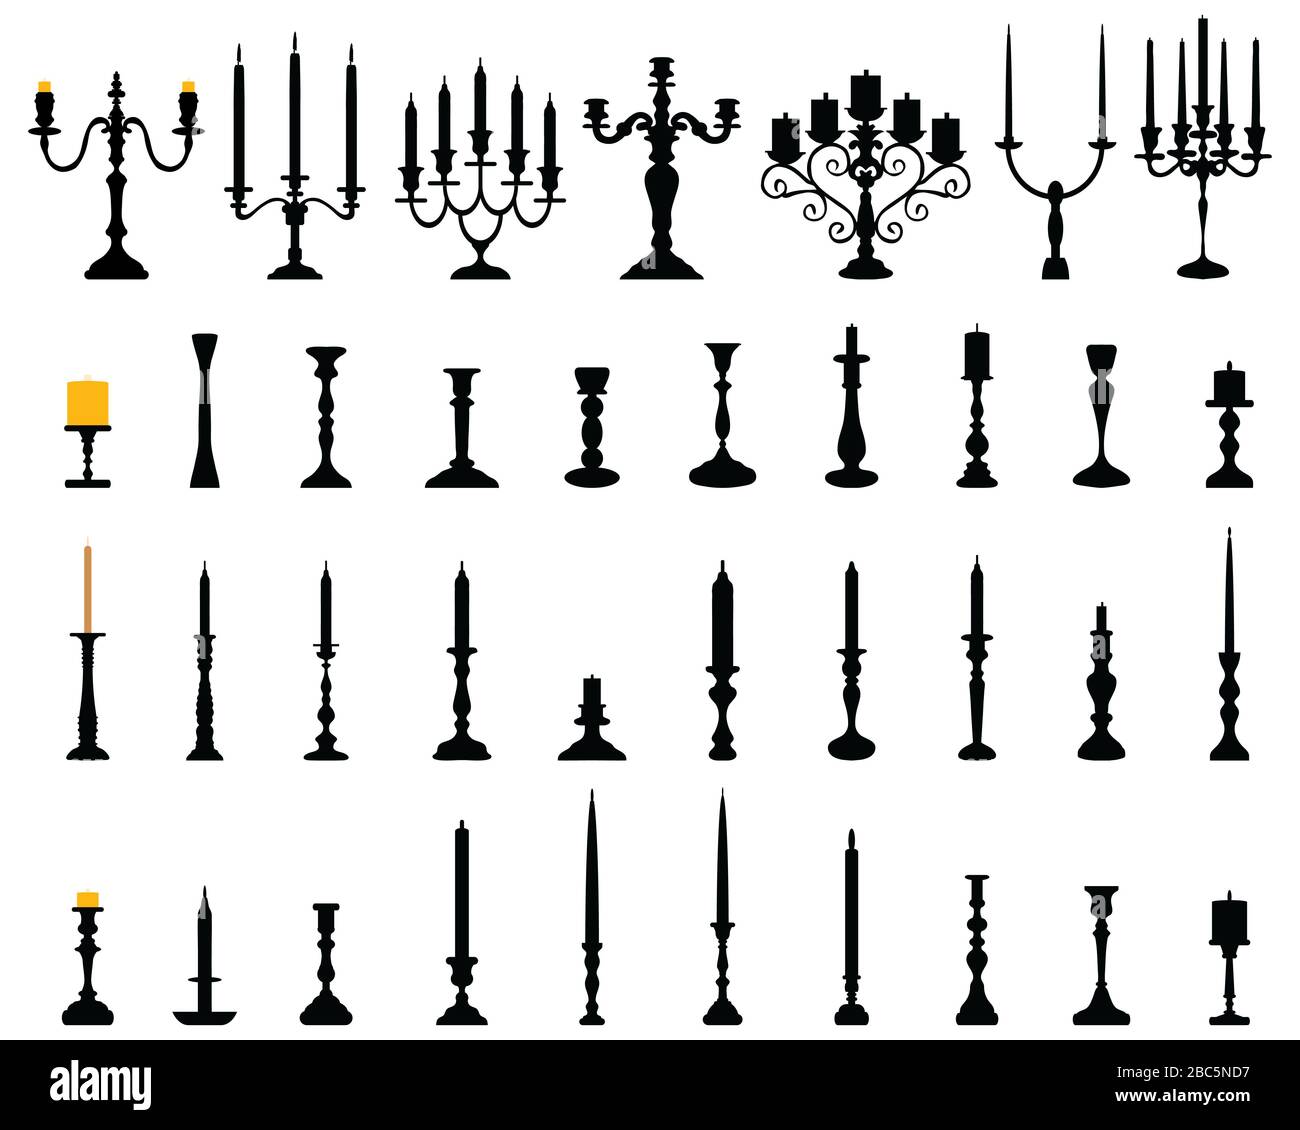 Les chandeliers de silhouettes noires sur fond blanc Banque D'Images